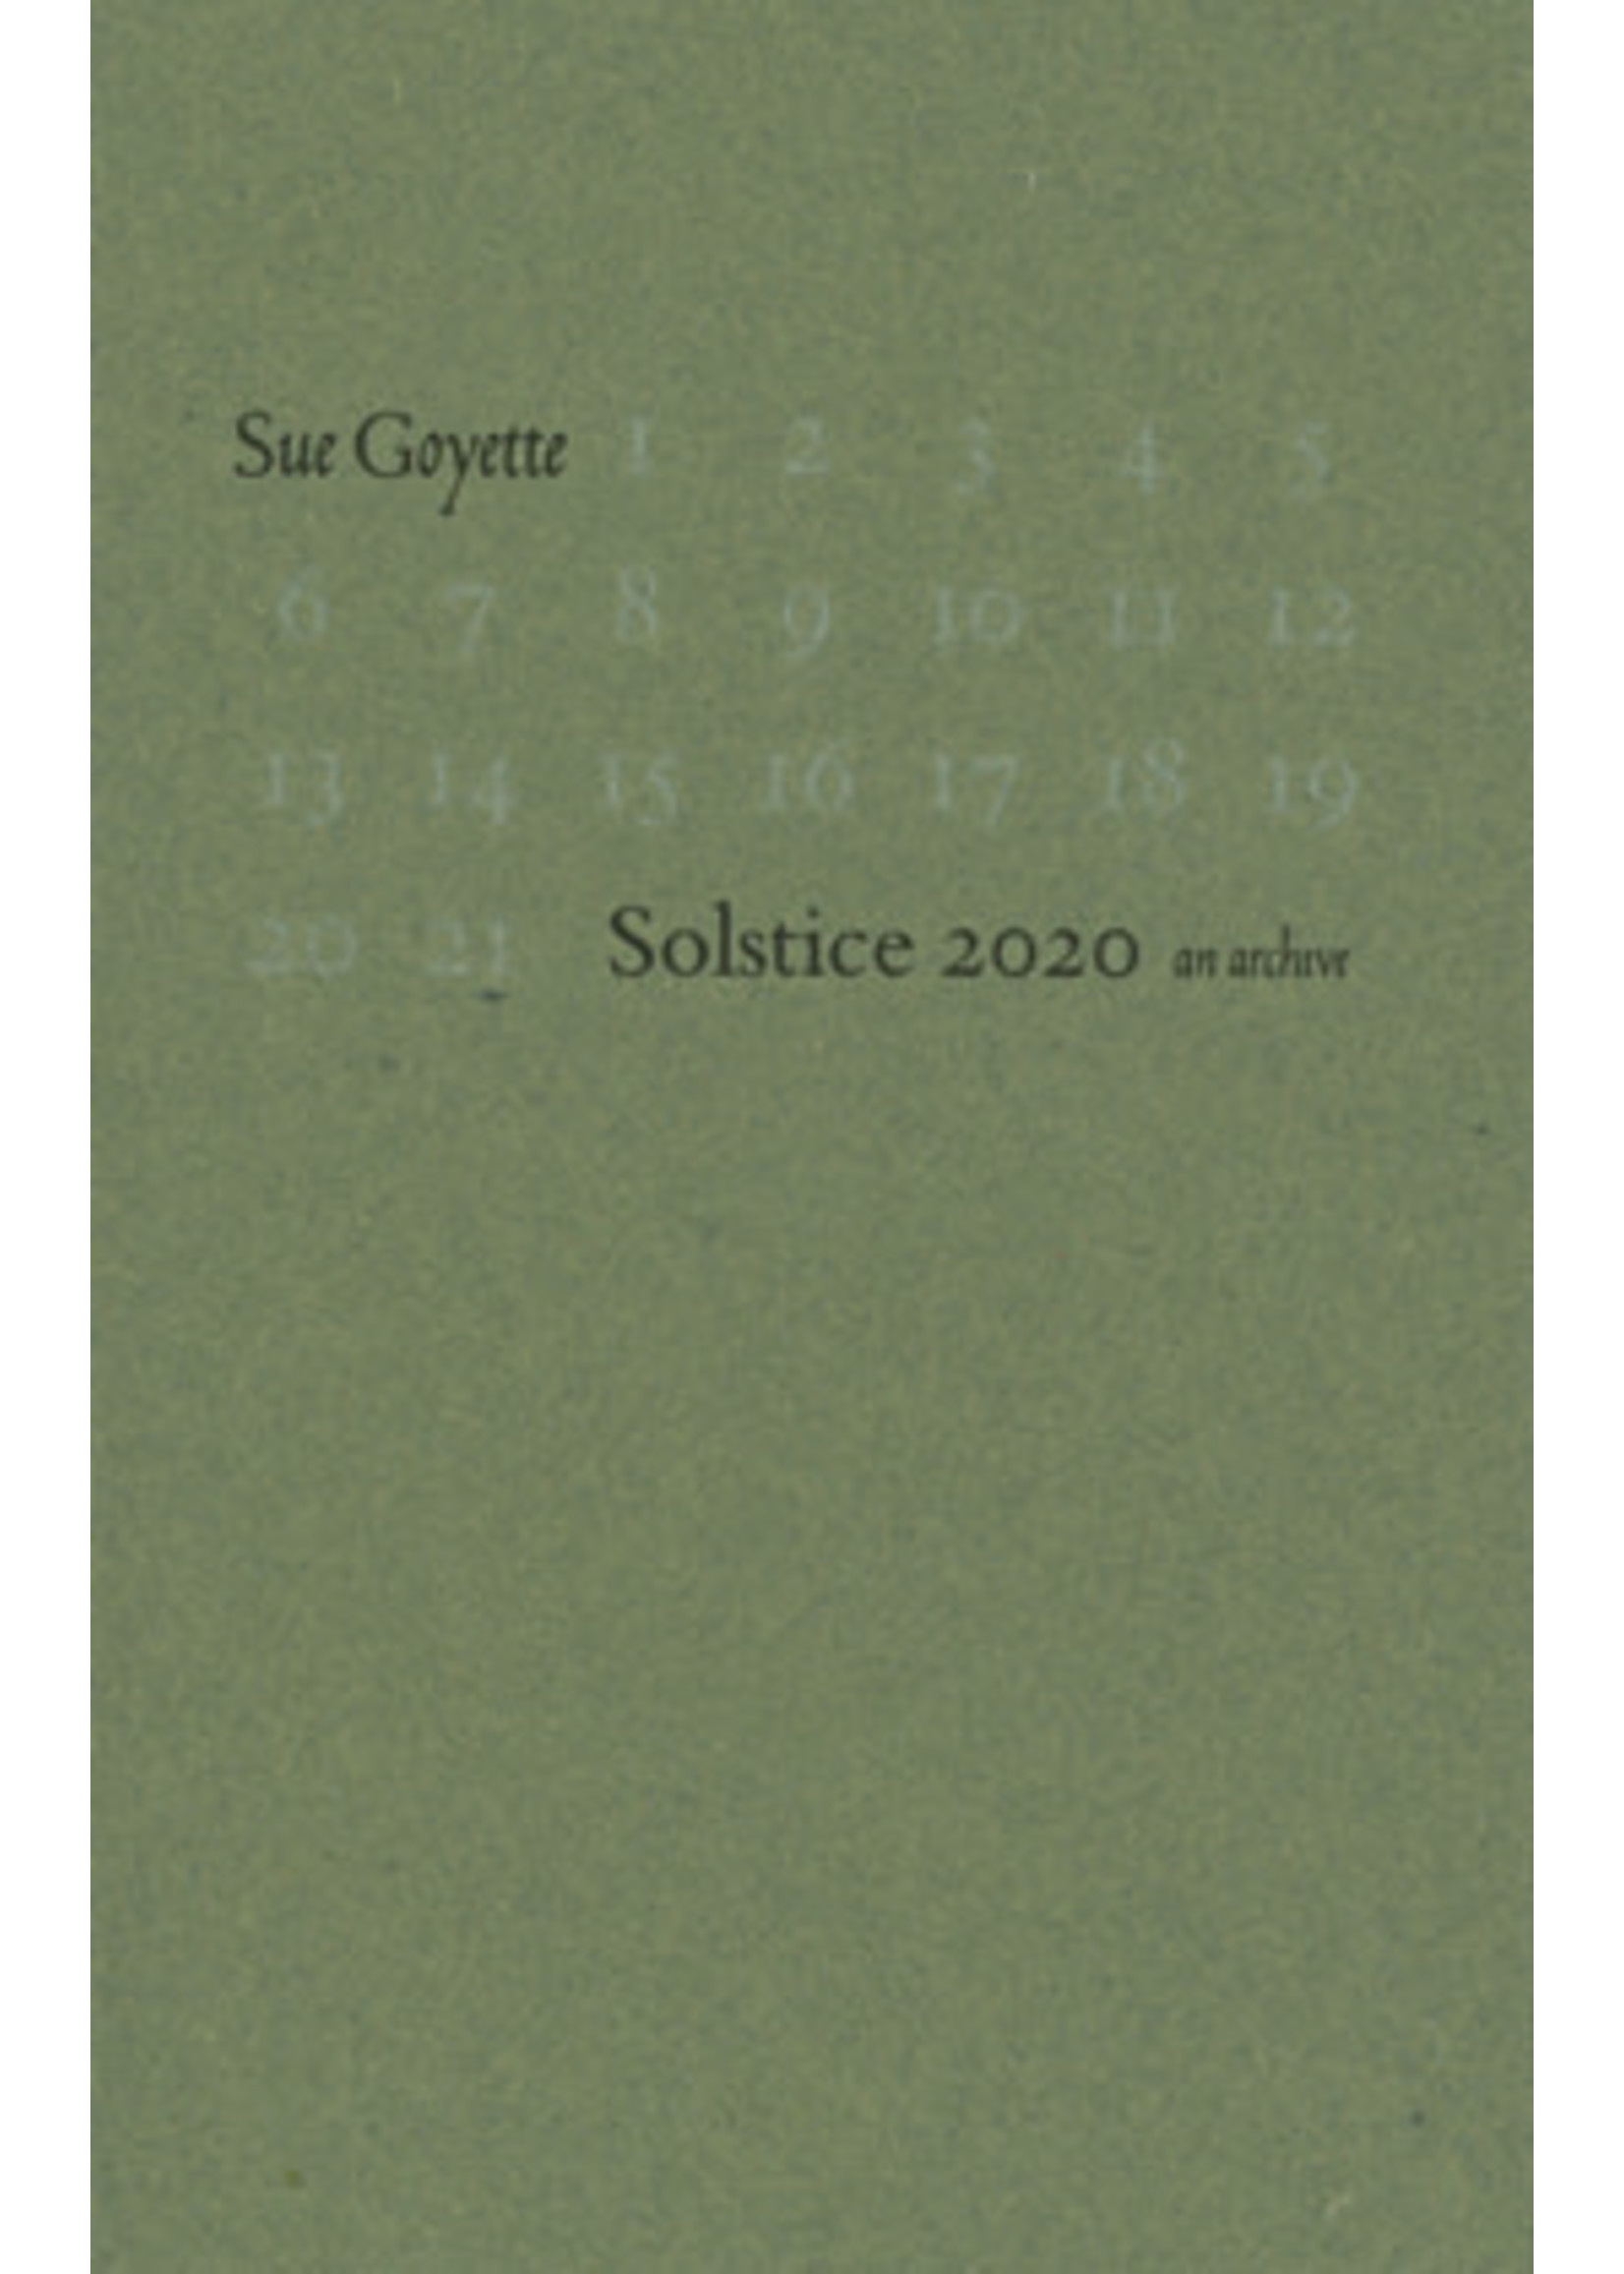 Solstice 2020: An Archive Sue Goyette